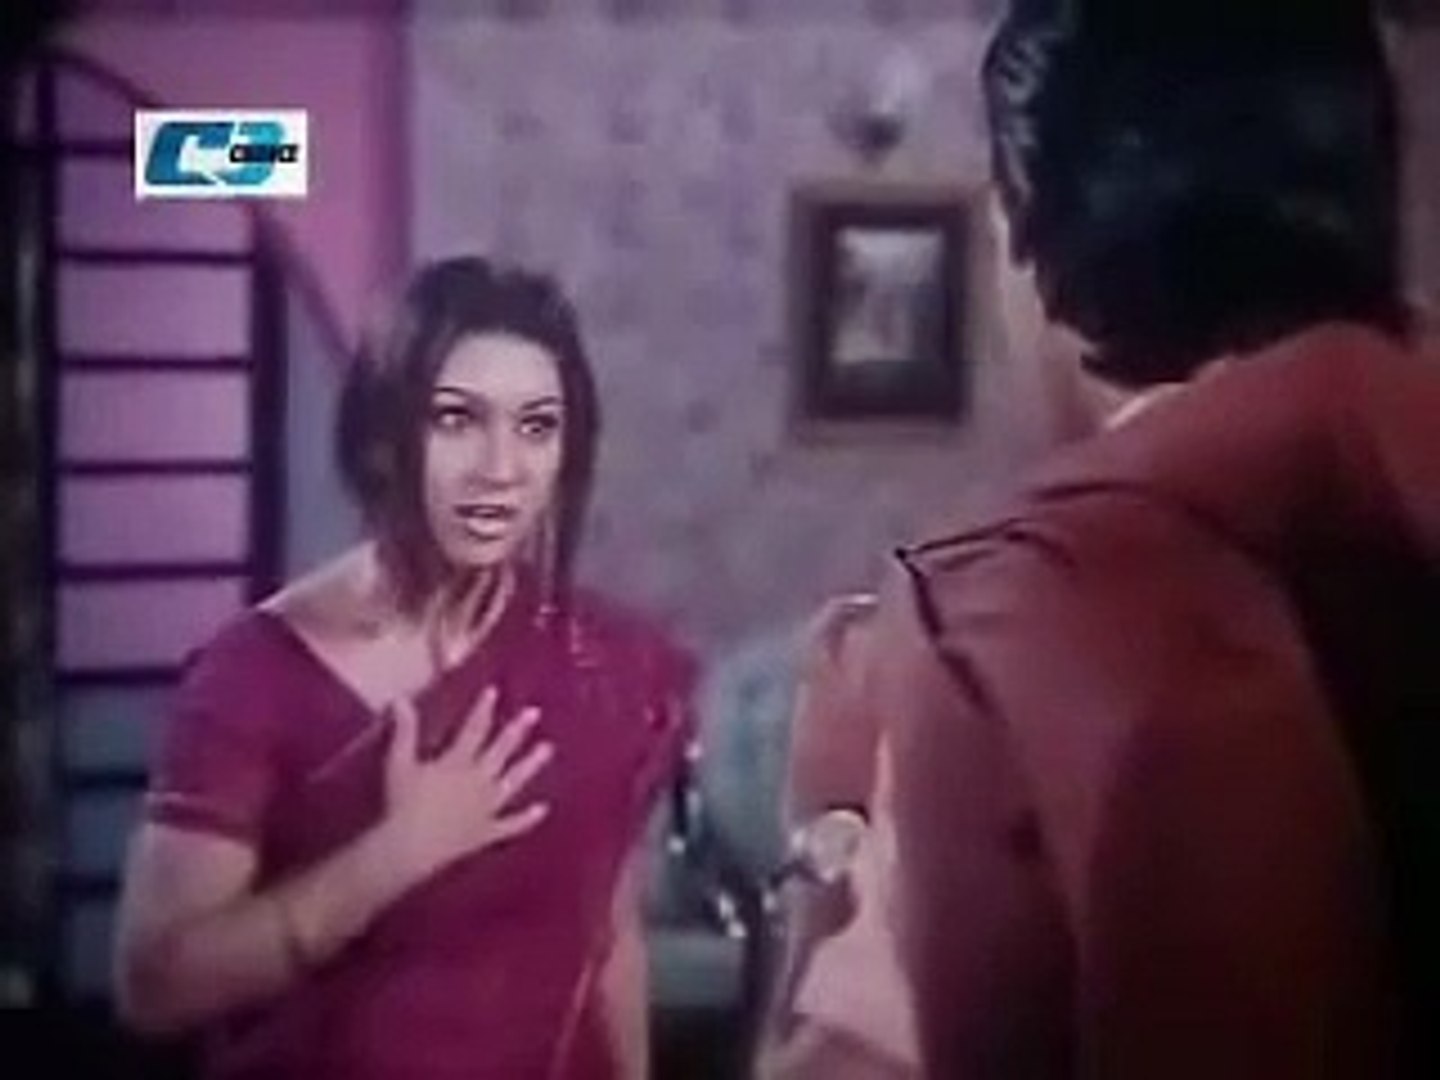 1440px x 1080px - opu biswas scandal bangladeshi actress - video Dailymotion